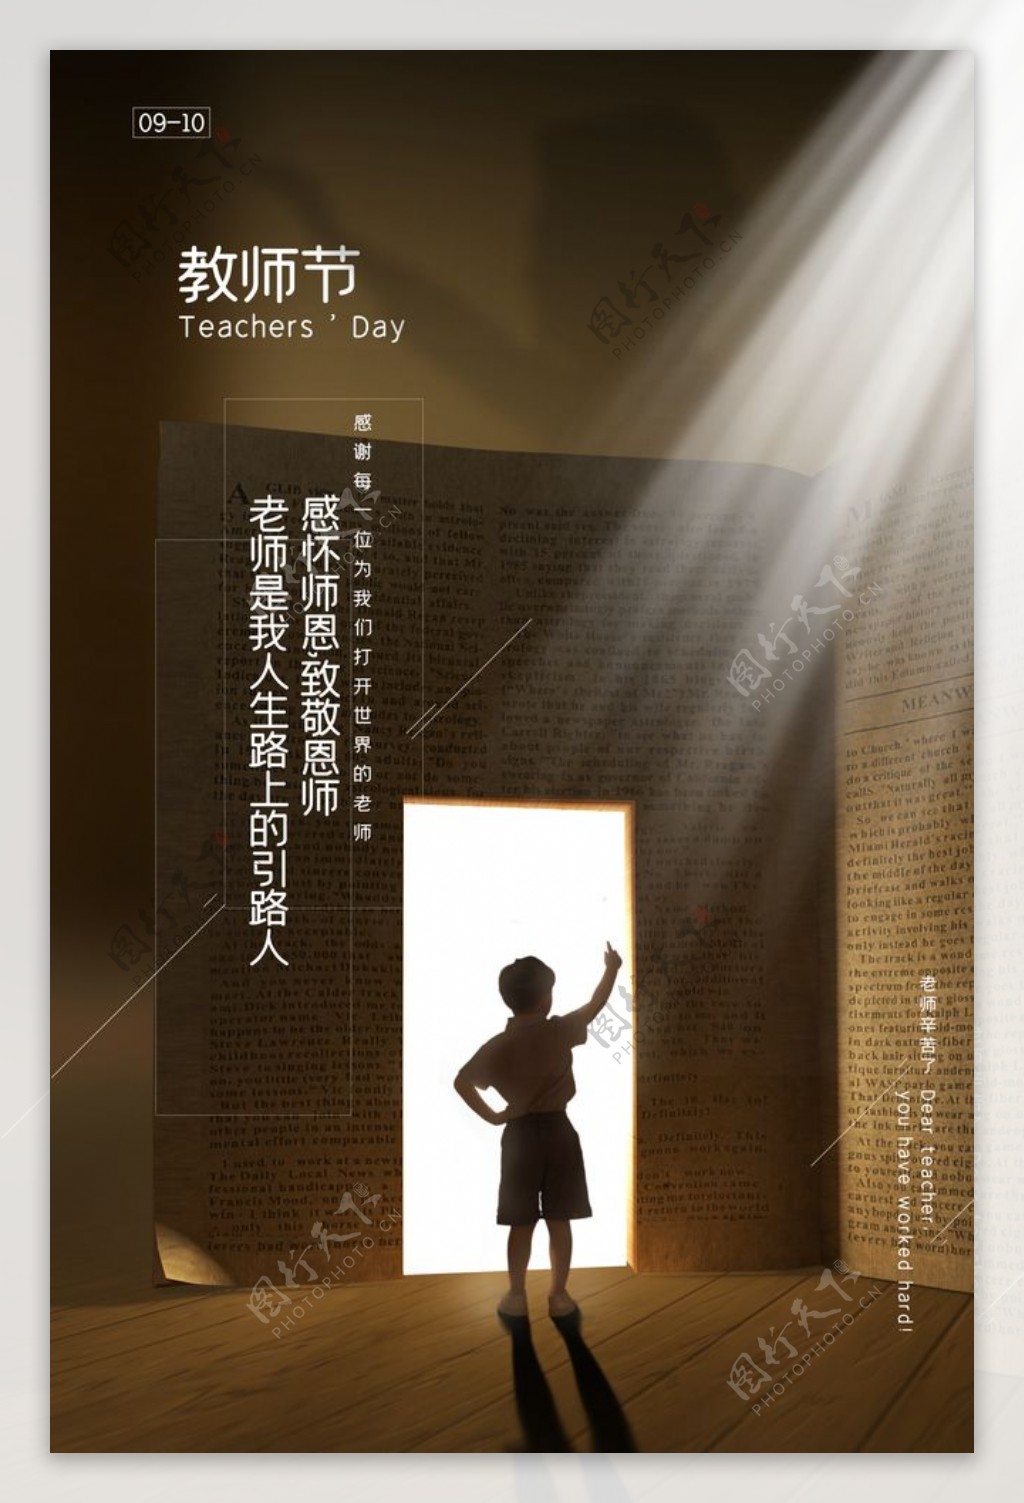 教师节传统节日宣传活动海报素材